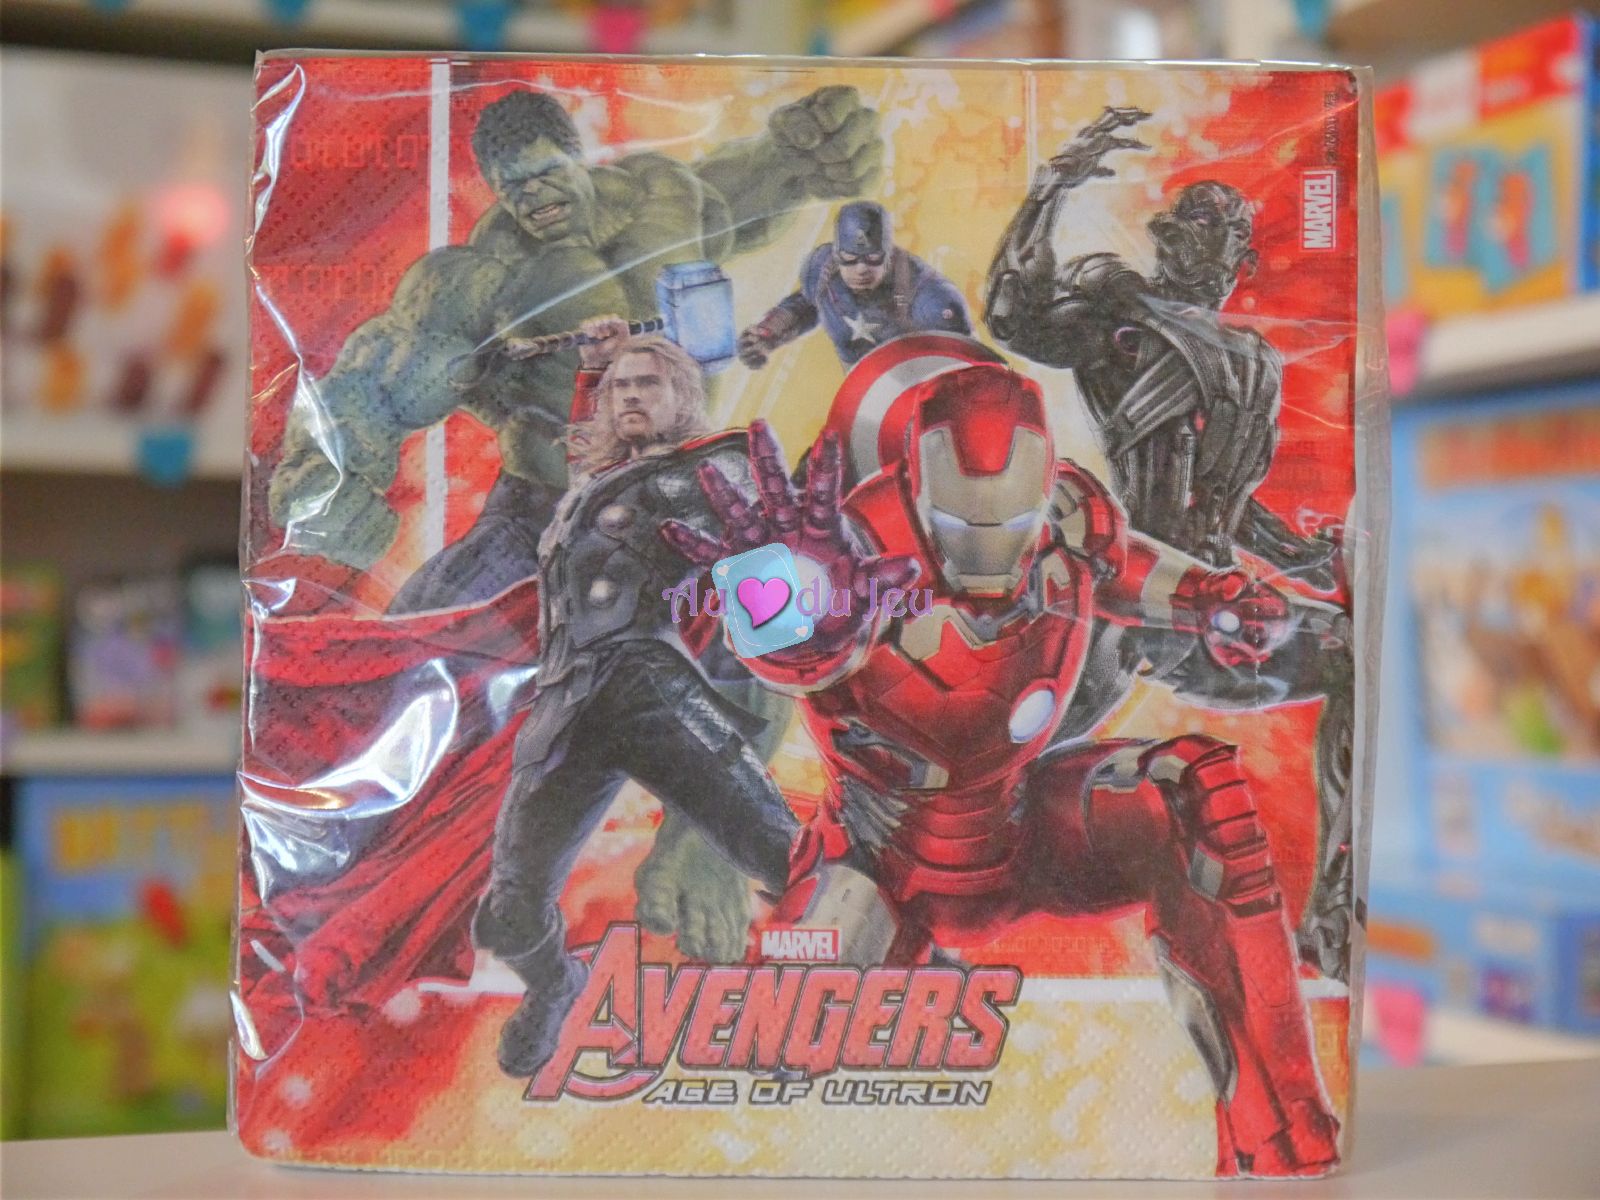 20 Serviettes Avengers